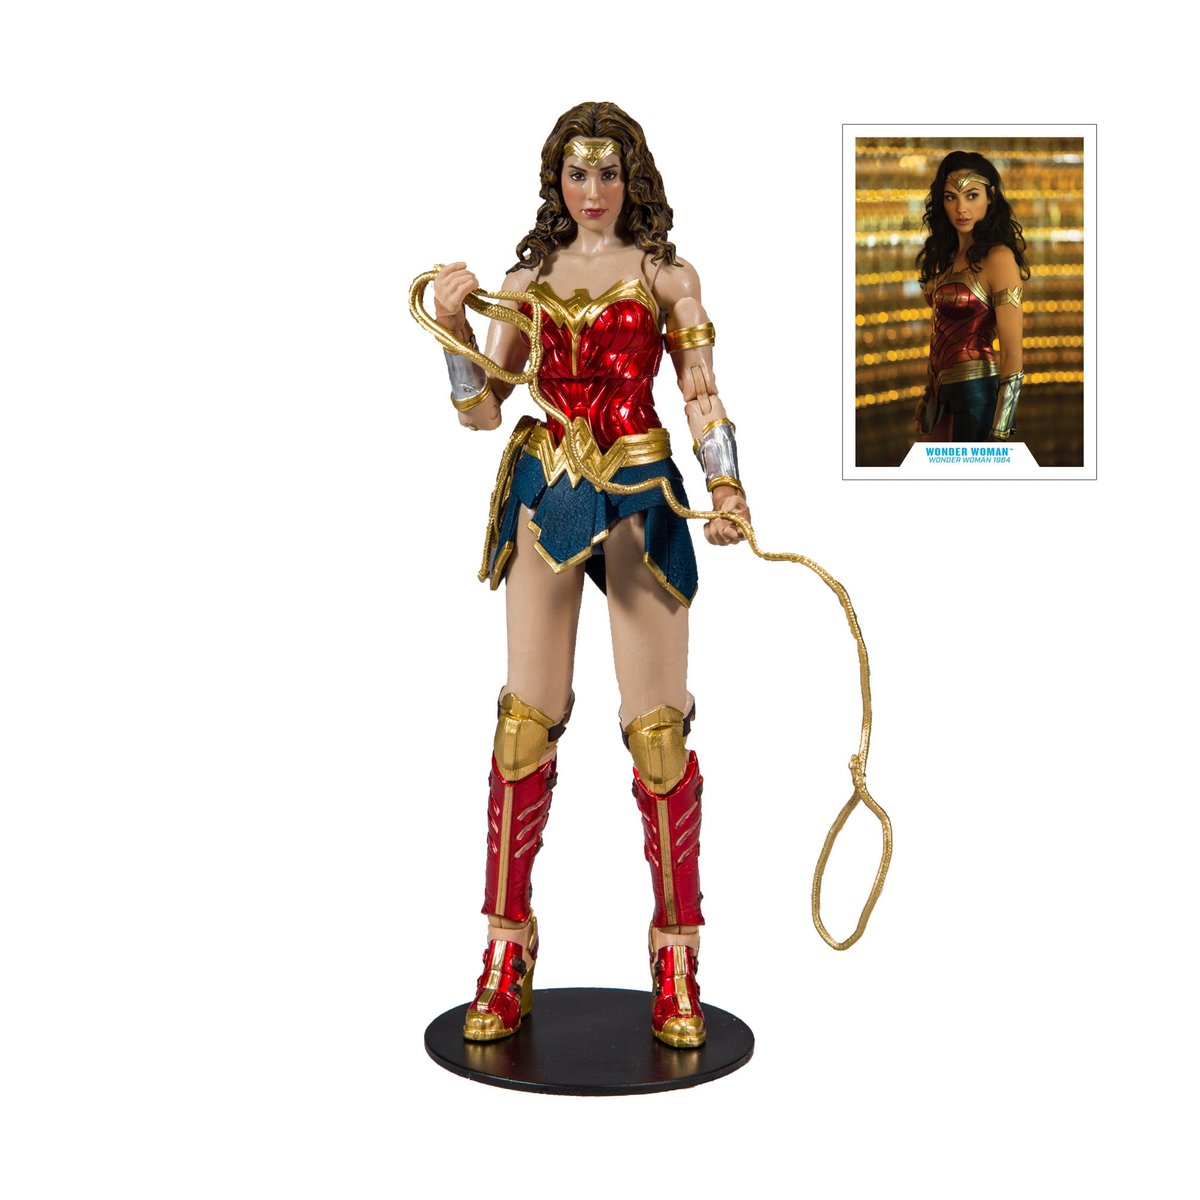 38% Off!

McFarlane DC Multiverse Wonder Woman 1984

https://t.co/cMQY3vNSQi

#BwcDeals #clearthelist #amazonfba #amazonfbm #Arbitrage #Deals https://t.co/dEkBzSeCT0